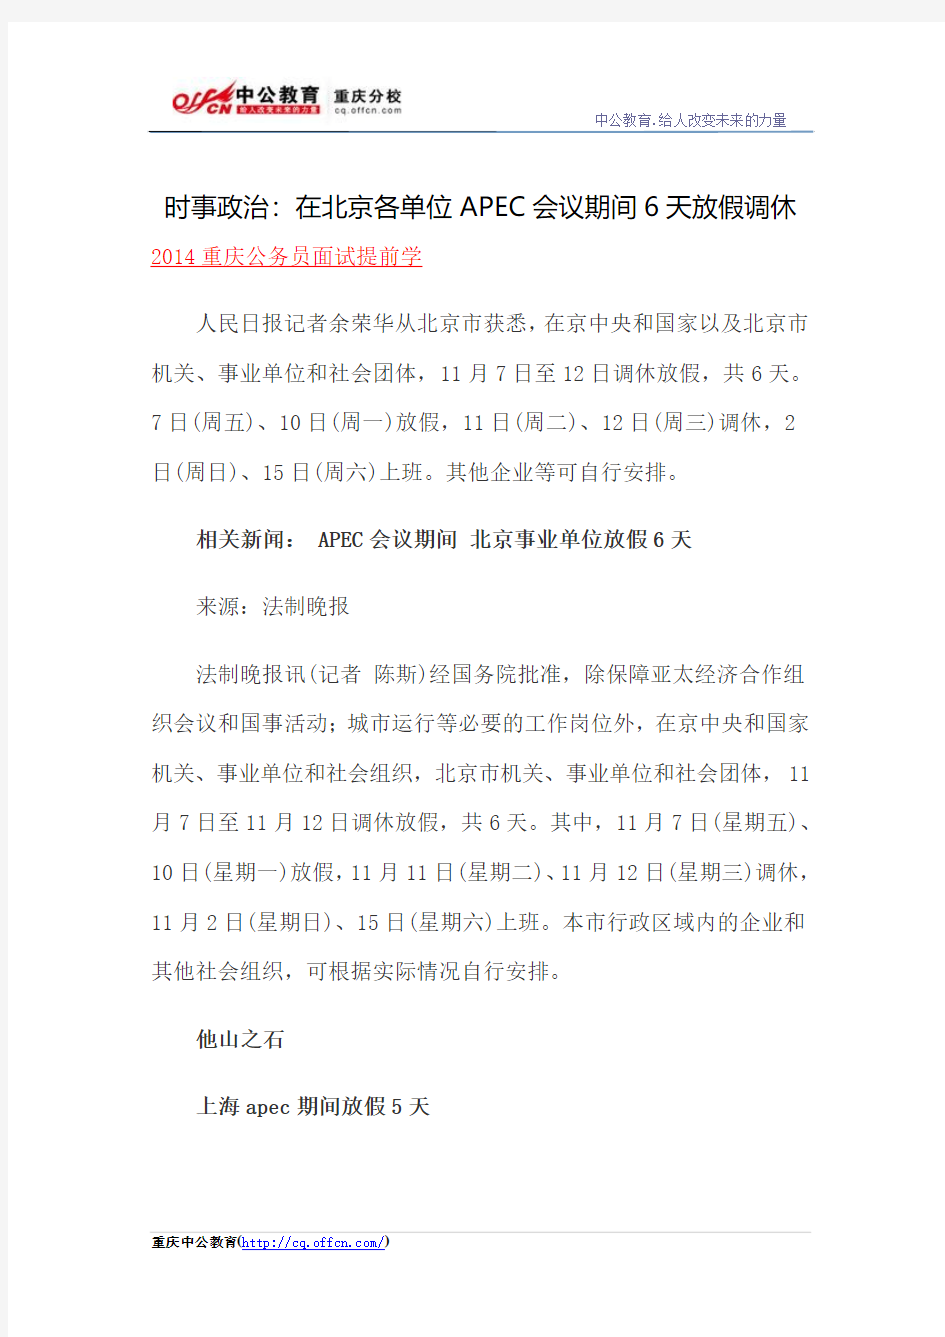 时事政治：在北京各单位APEC会议期间6天放假调休